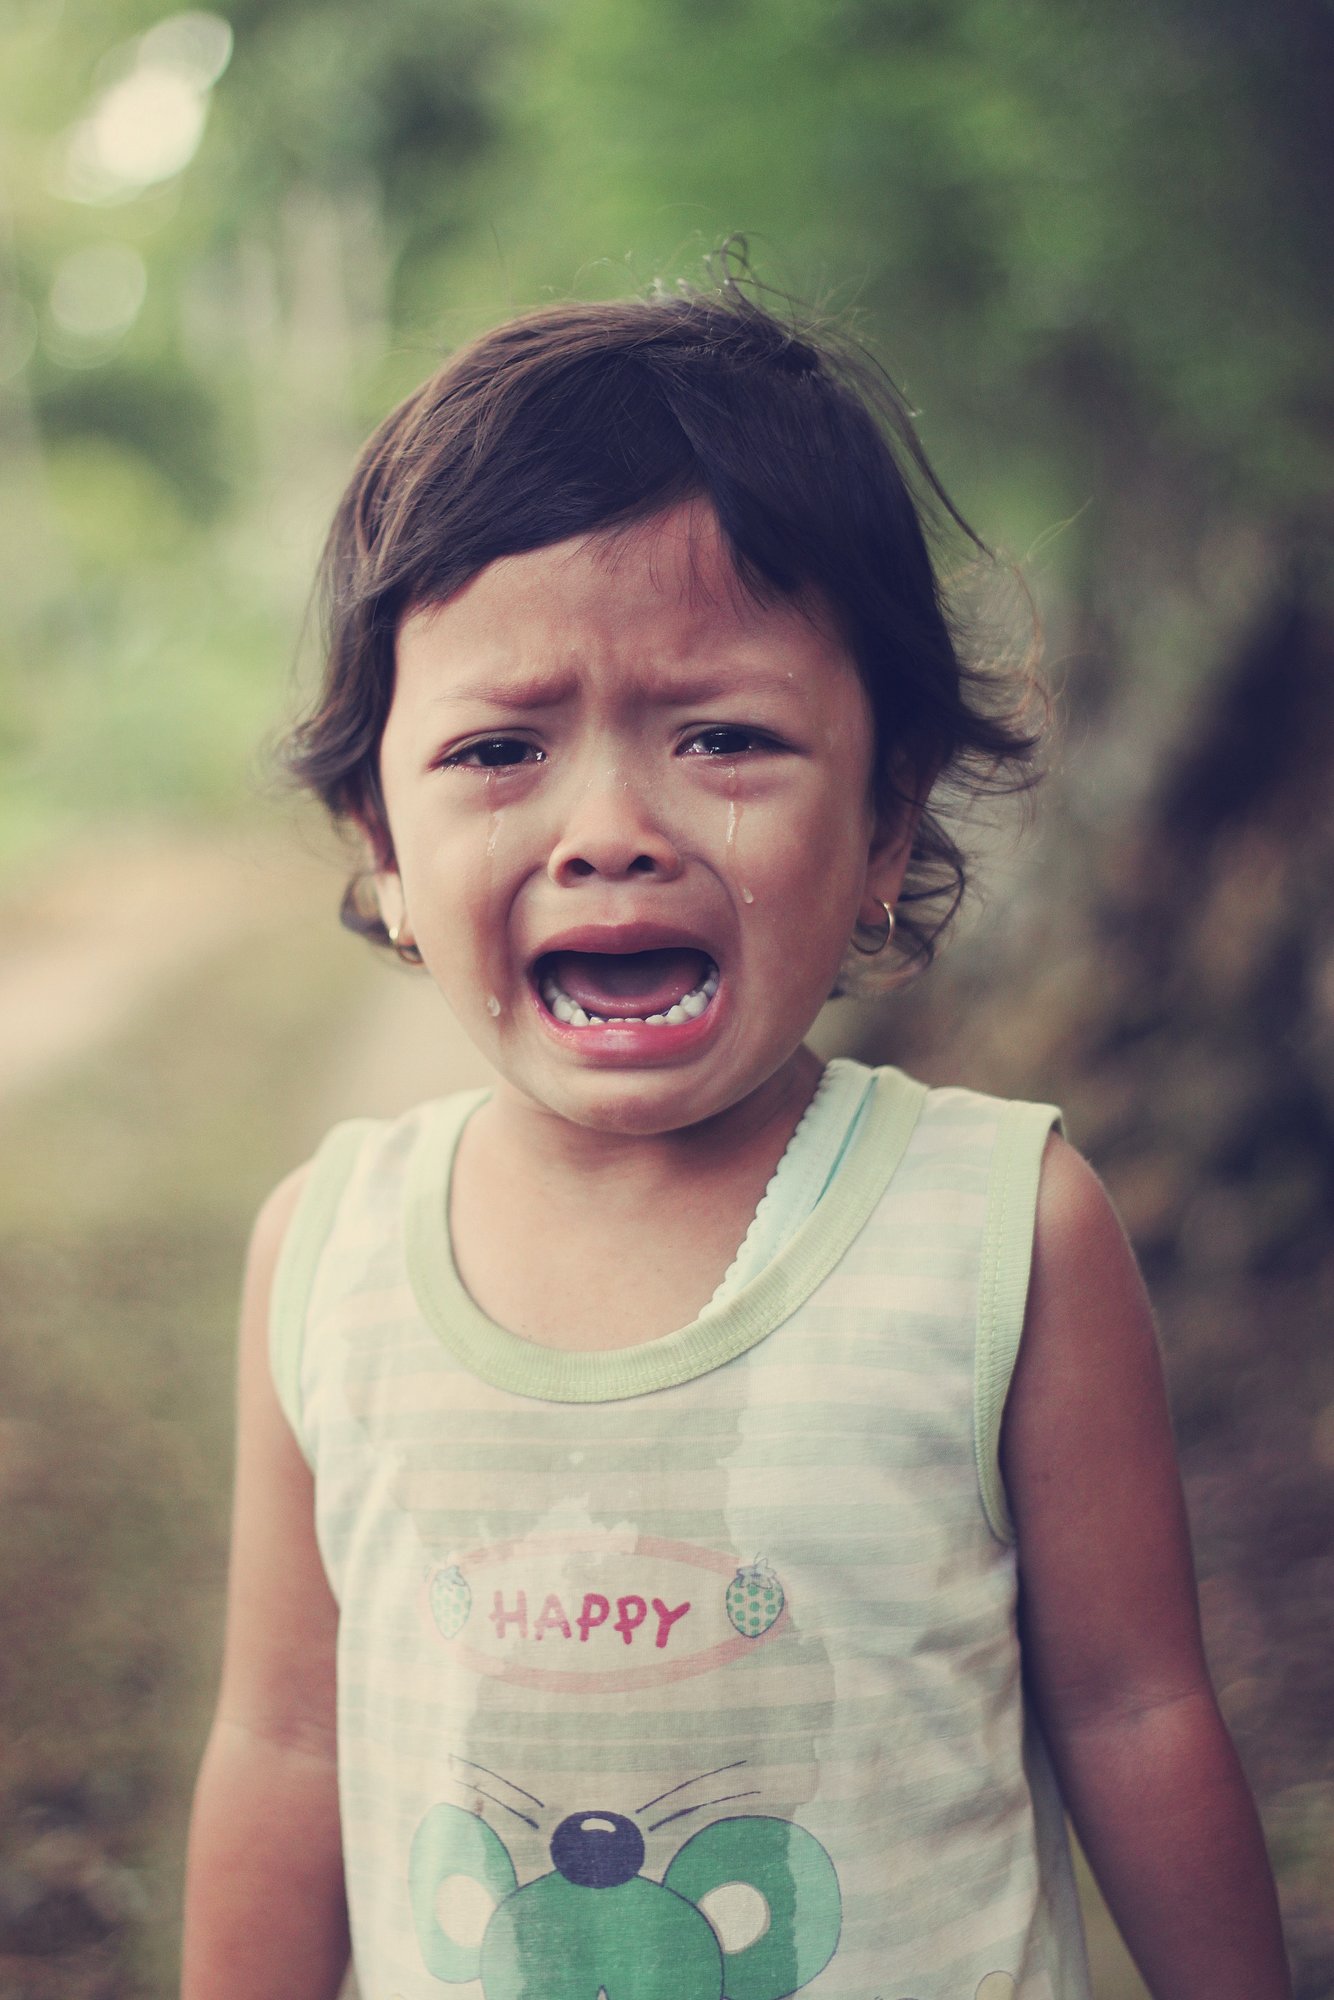 Az óvodai búcsút semmiképpen ne nyújtsuk el. A gyerek általában abbahagyja a sírást, amint a szülő elmegy.